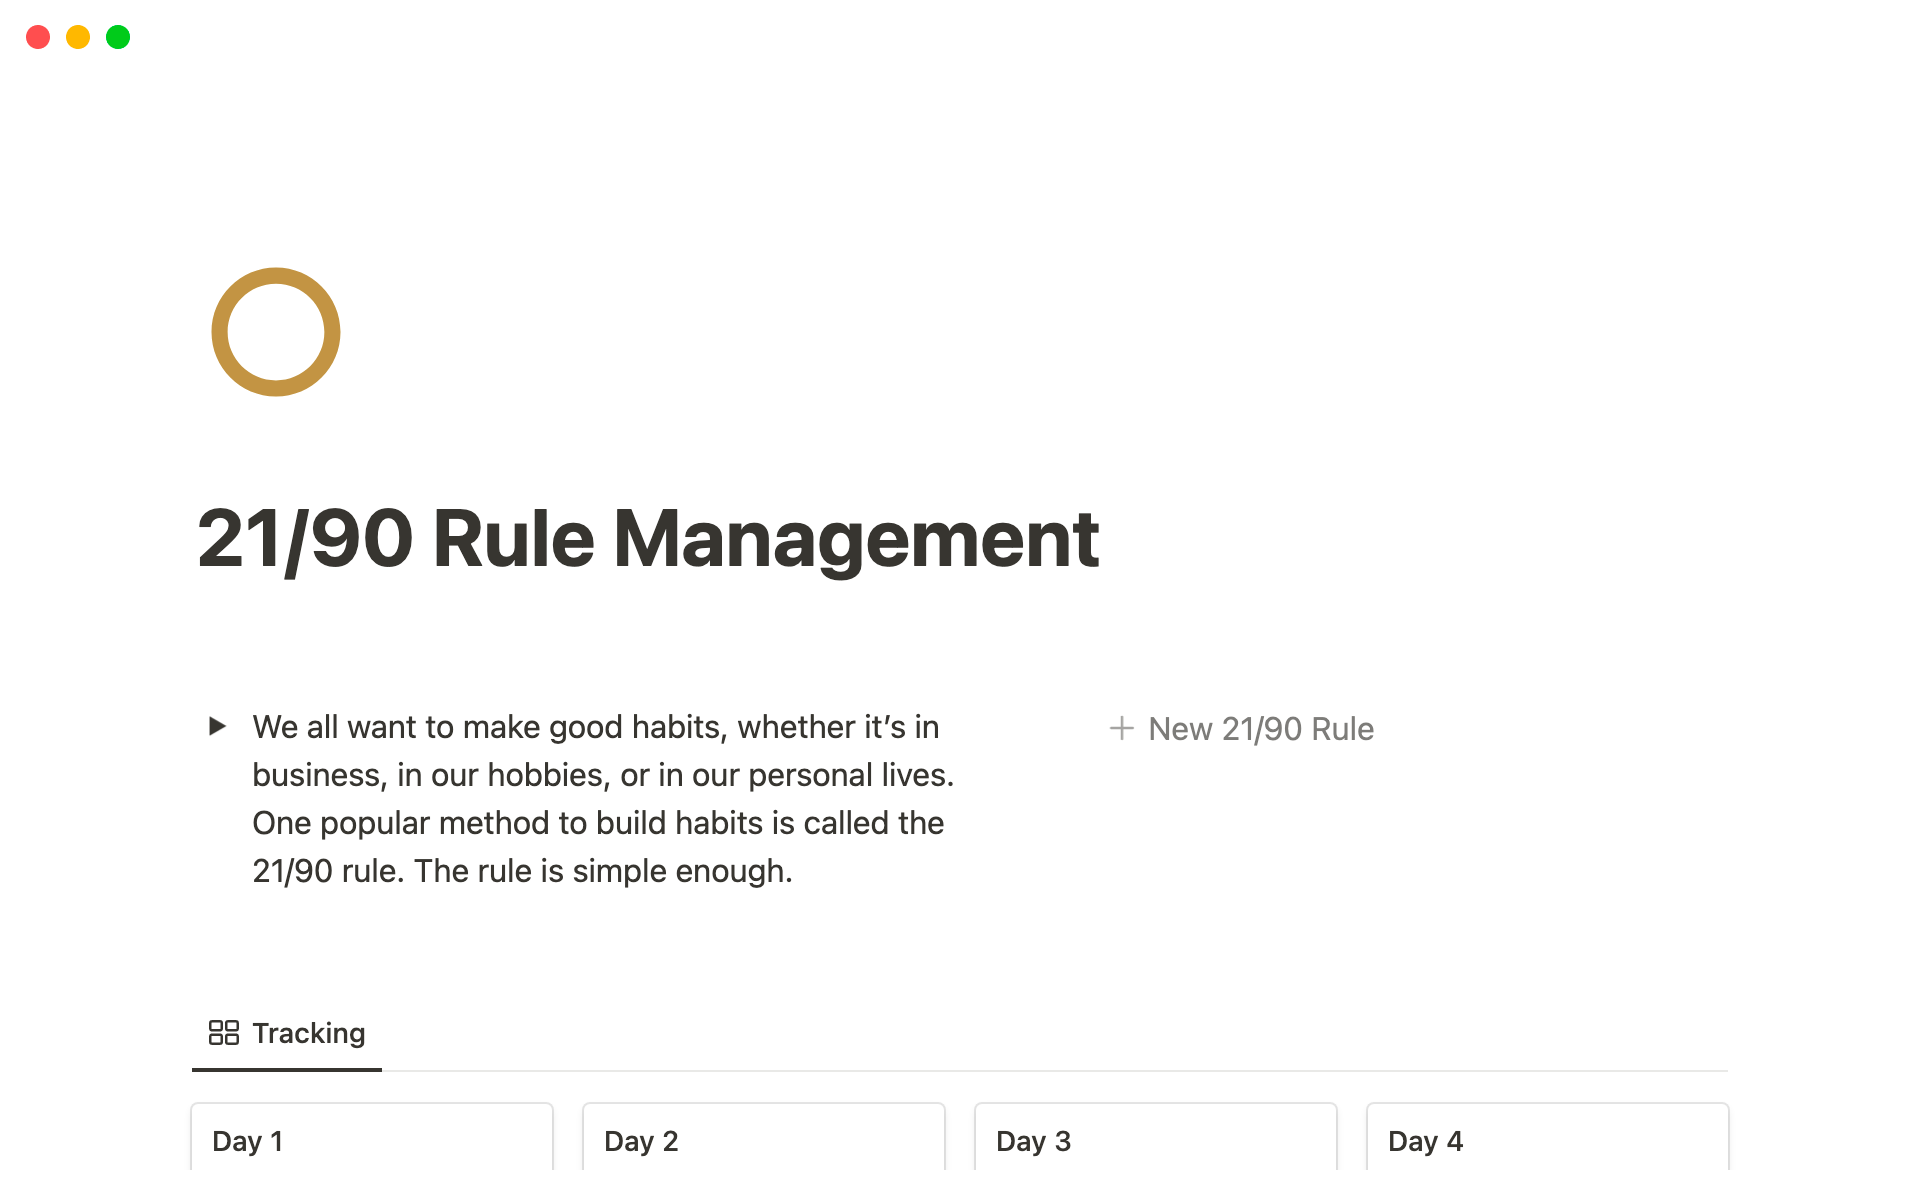 Uma prévia do modelo para 21/90 Rule Management